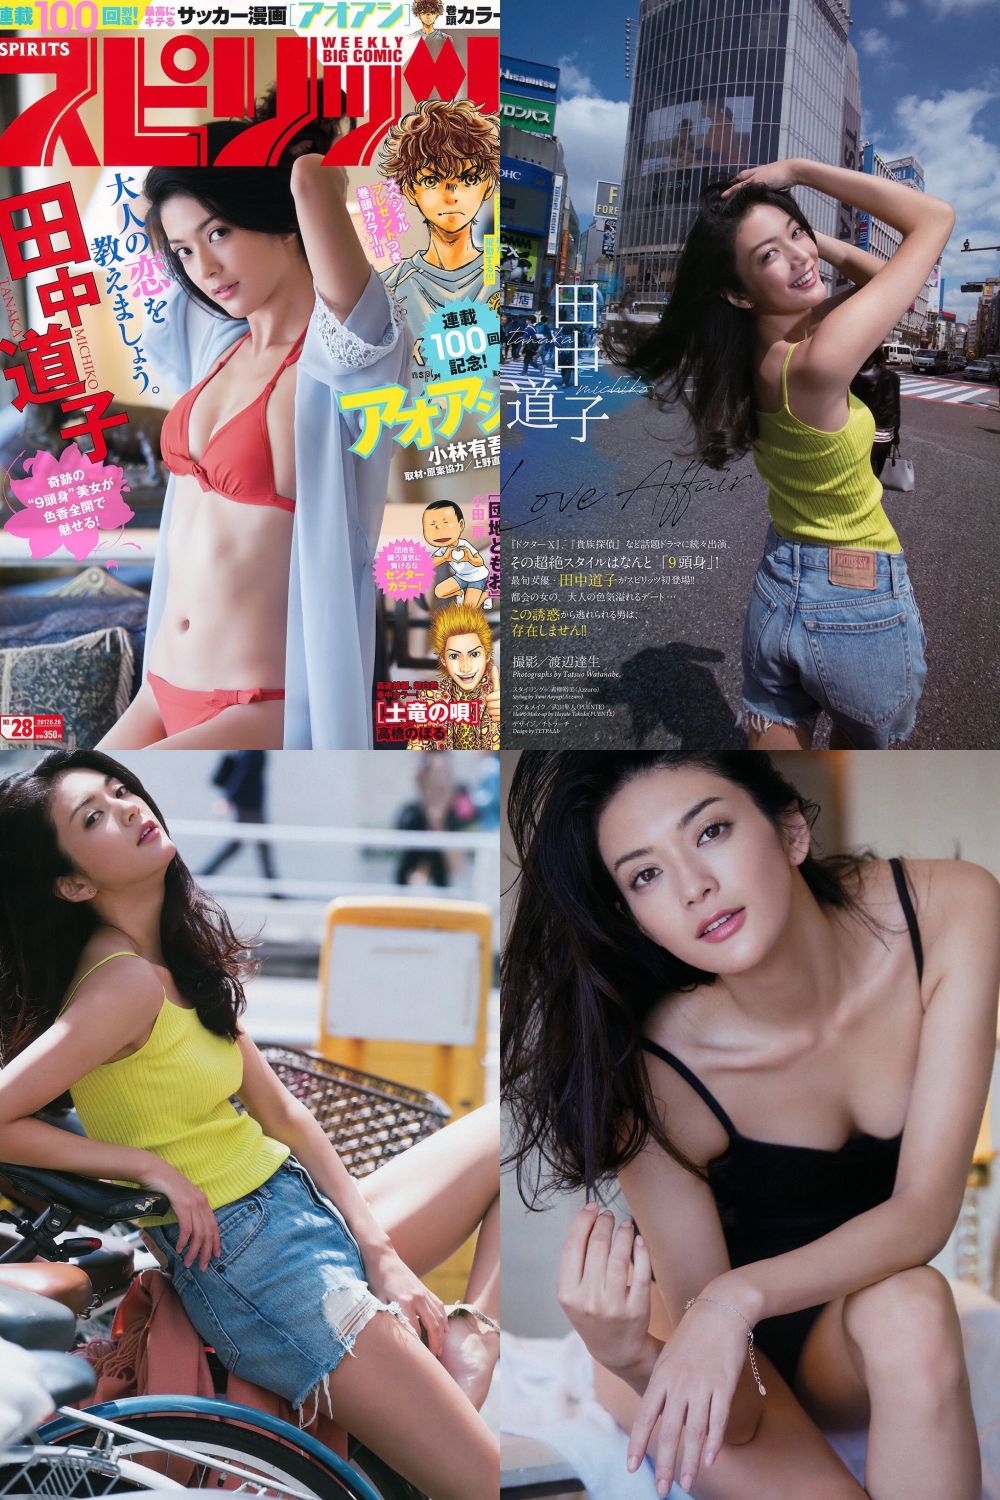 田中道子 Sexy and Hottest Photos , Latest Pics